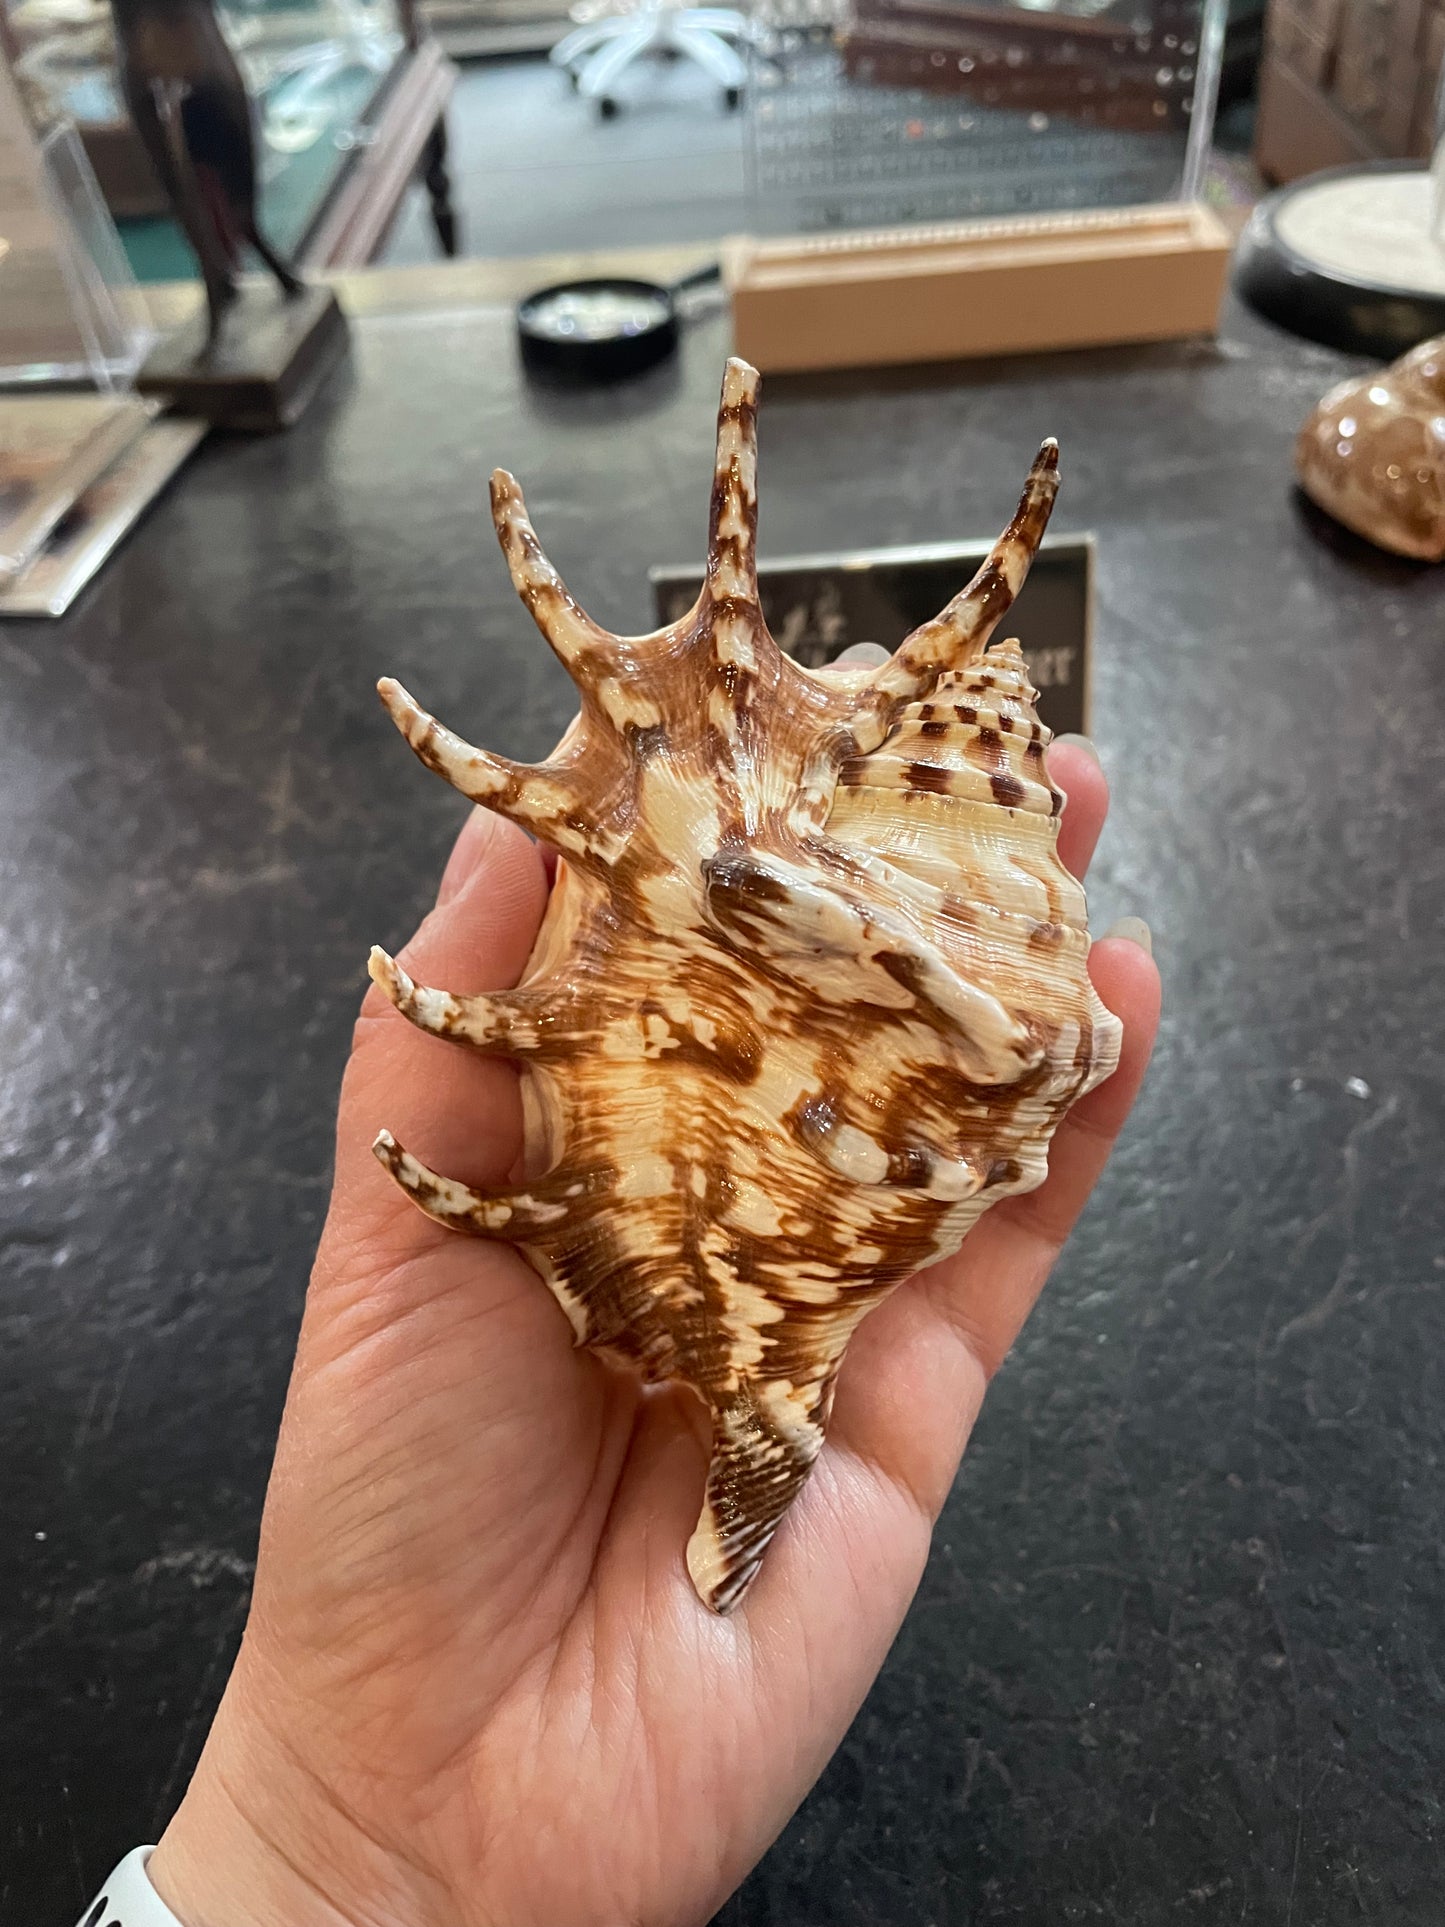 Scorpius spider conch